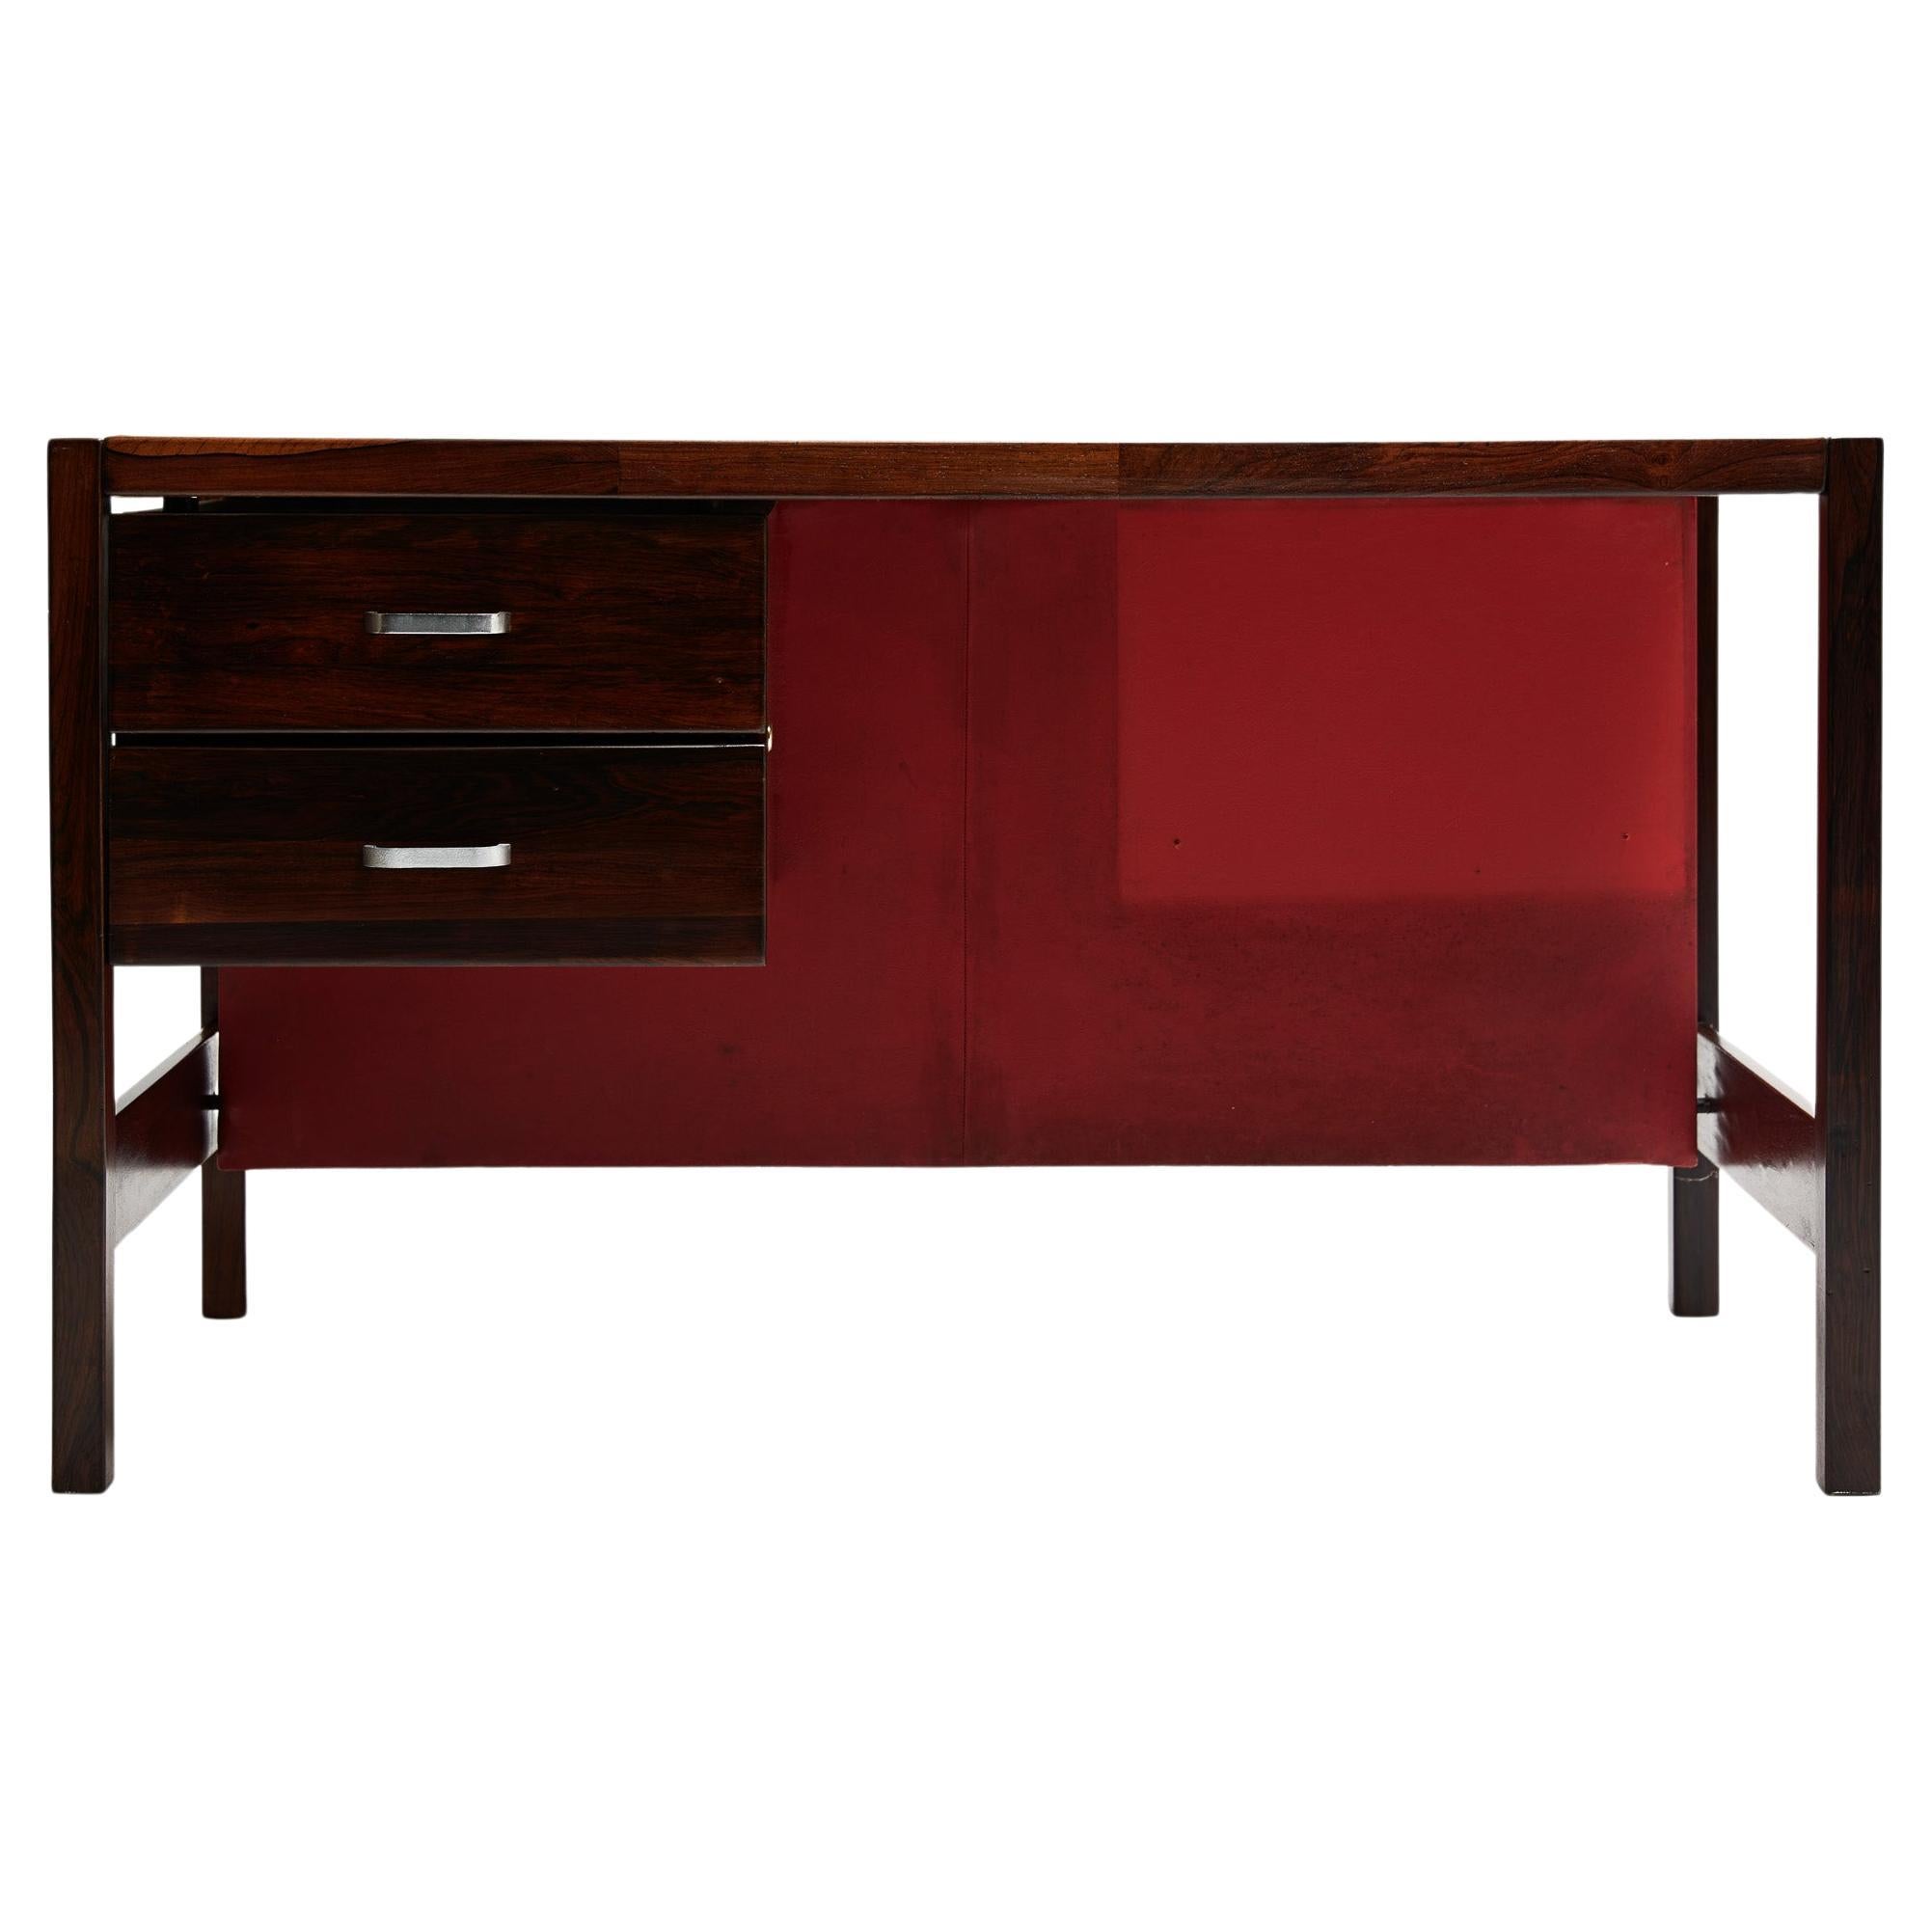 Dieser moderne Schreibtisch aus Hartholz von Jorge Zalszupin für L'Atelier aus den Sechzigerjahren ist heute erhältlich.

Dieser schöne Schreibtisch ist aus massivem brasilianischem Palisanderholz, bekannt als Jacaranda, gefertigt und hat zwei